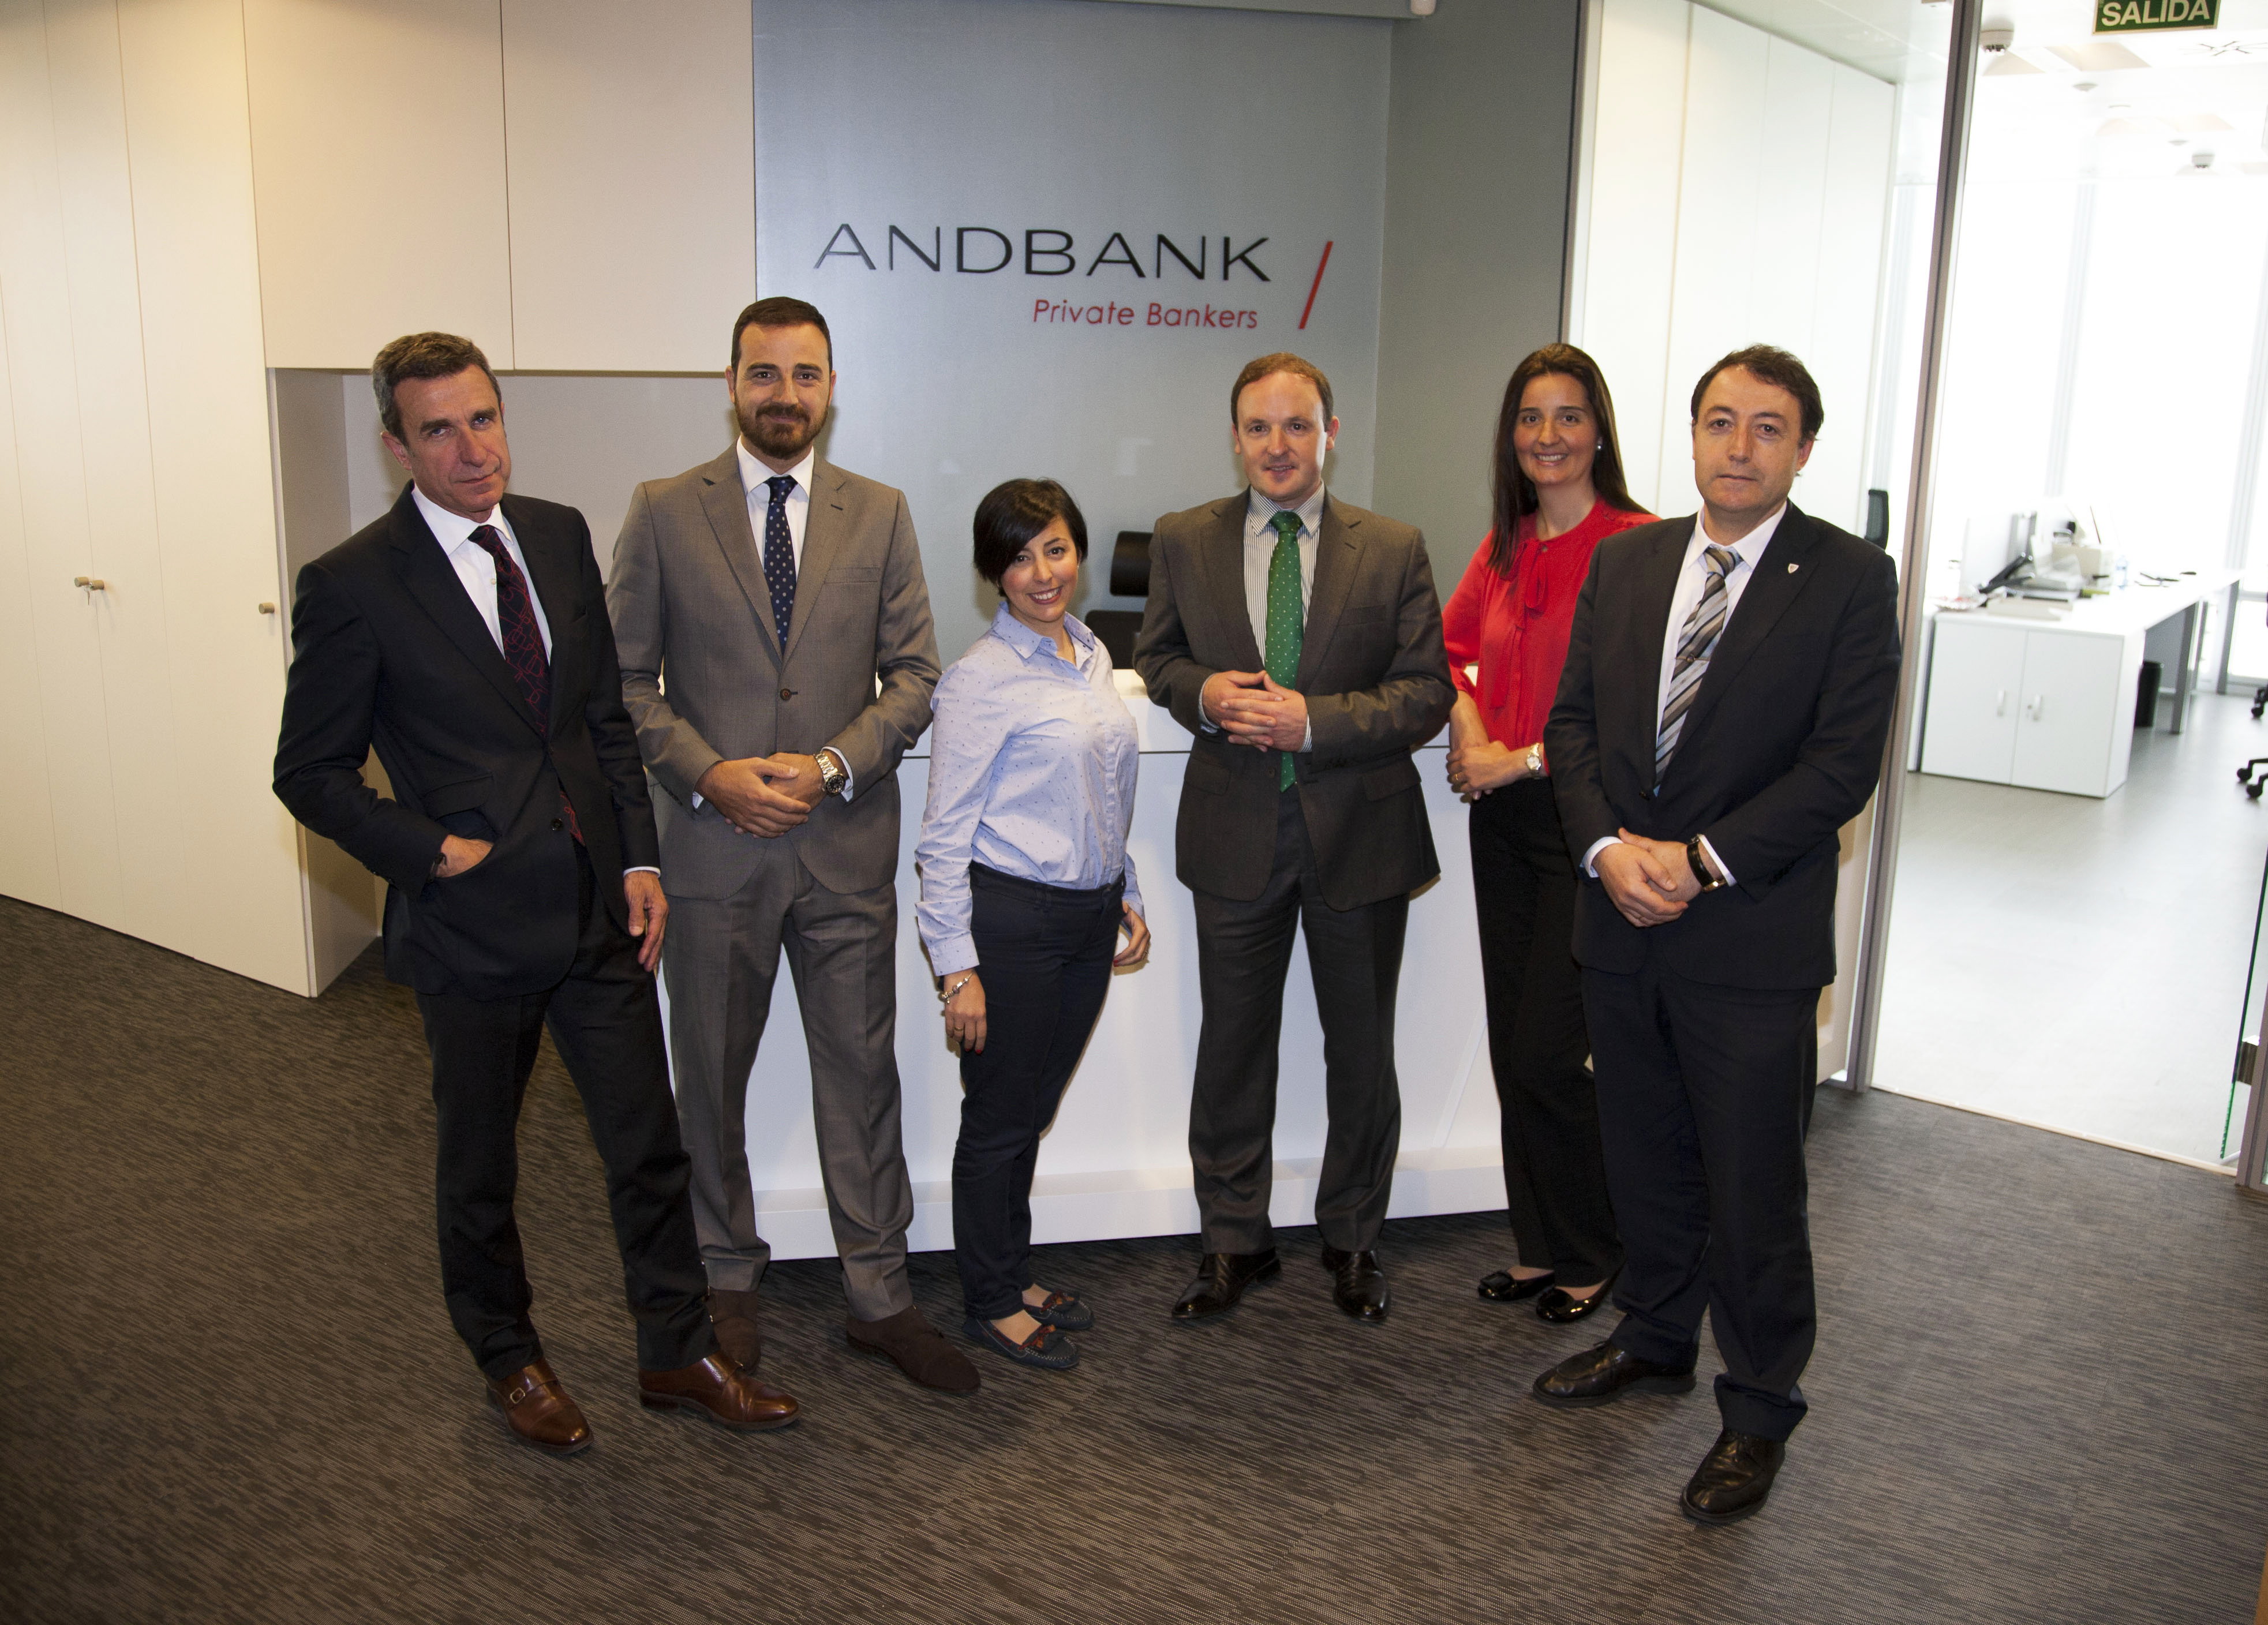 Andbank traslada su oficina de Bilbao a la Torre Iberdrola para reforzar su presencia